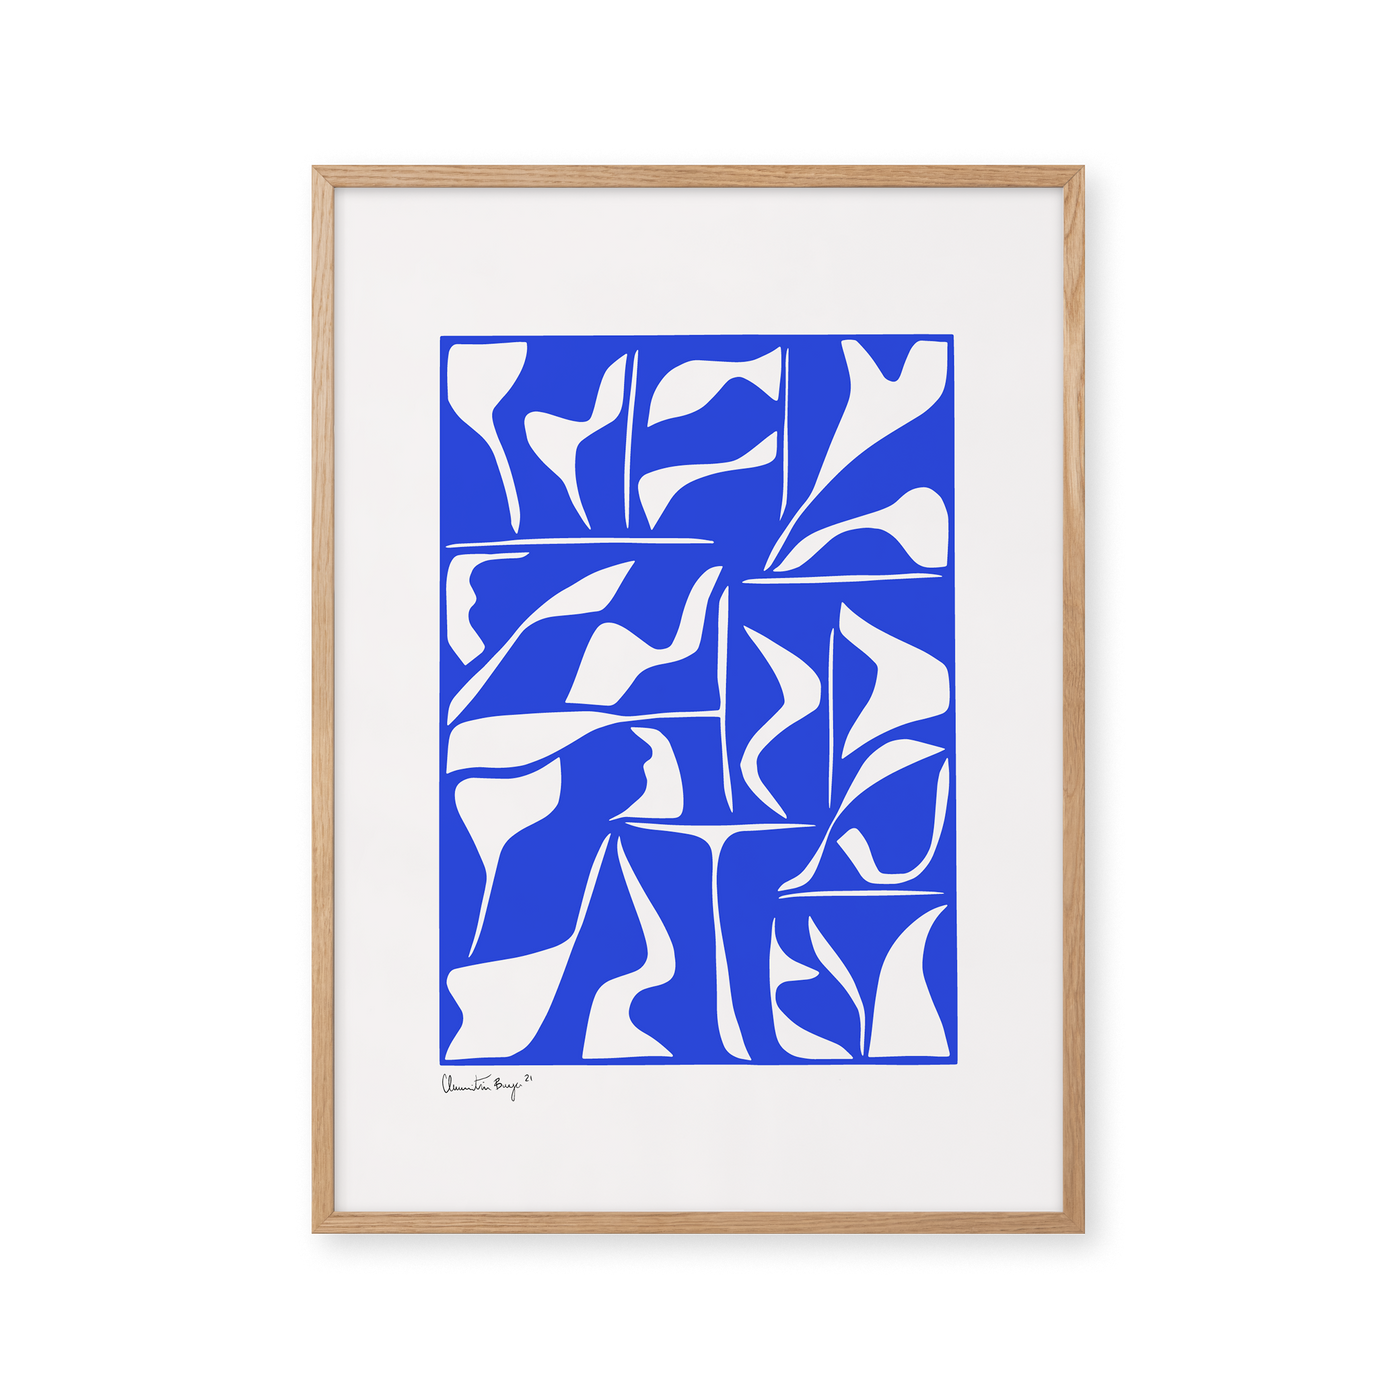 Papercut 02 - Blue